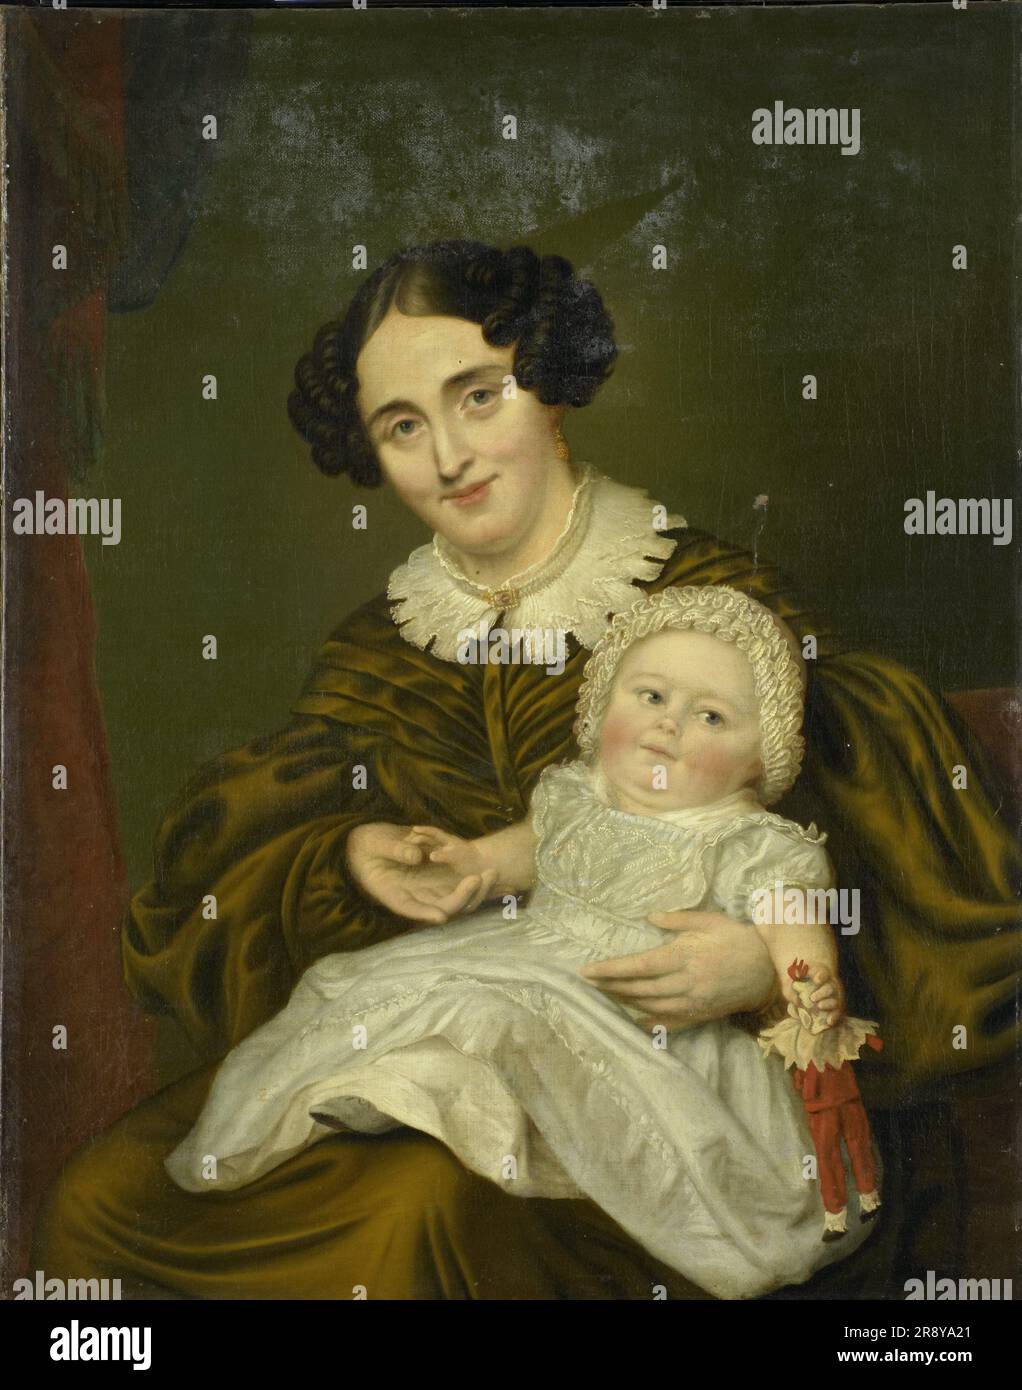 Mme Carp et son petit garçon, 1835-1843. Portrait double, probablement de Johanna Gesiena van Demmeltraadt (1804-1878), épouse de Jan Hendrik Carp (1788-1845), et de son fils Clemens Johan (1834-1889), ou de sa fille Anna Johanna (1842-1901). Banque D'Images